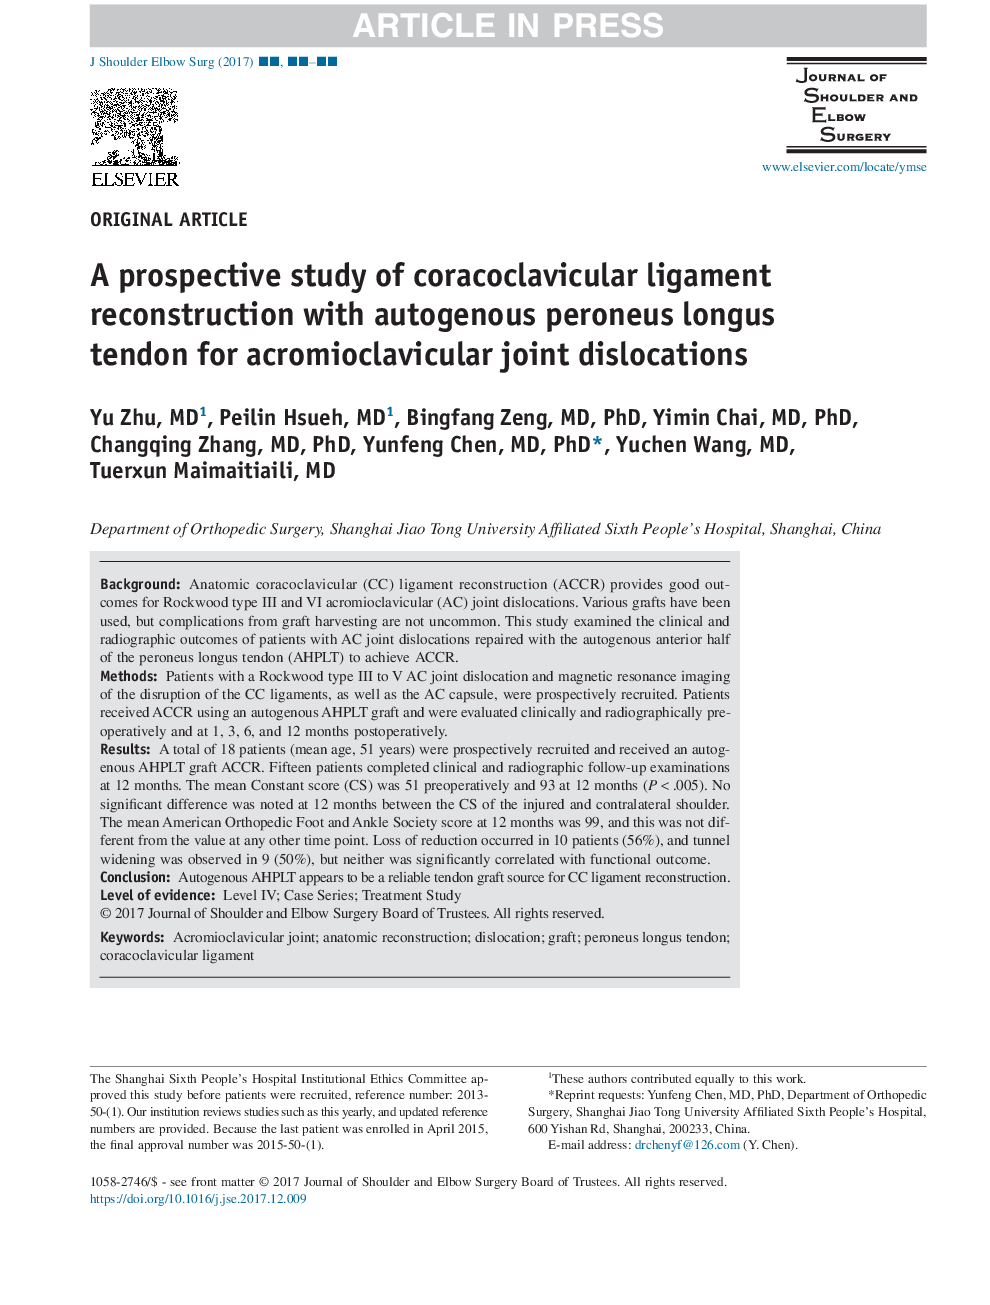 یک مطالعه آینده نگر از بازسازی لثه کوراکوکلایکولر با تاندون لگن پرونئوس اتوژن برای جوش خوردگی مفصلی آکرومیوکلوویکولار 